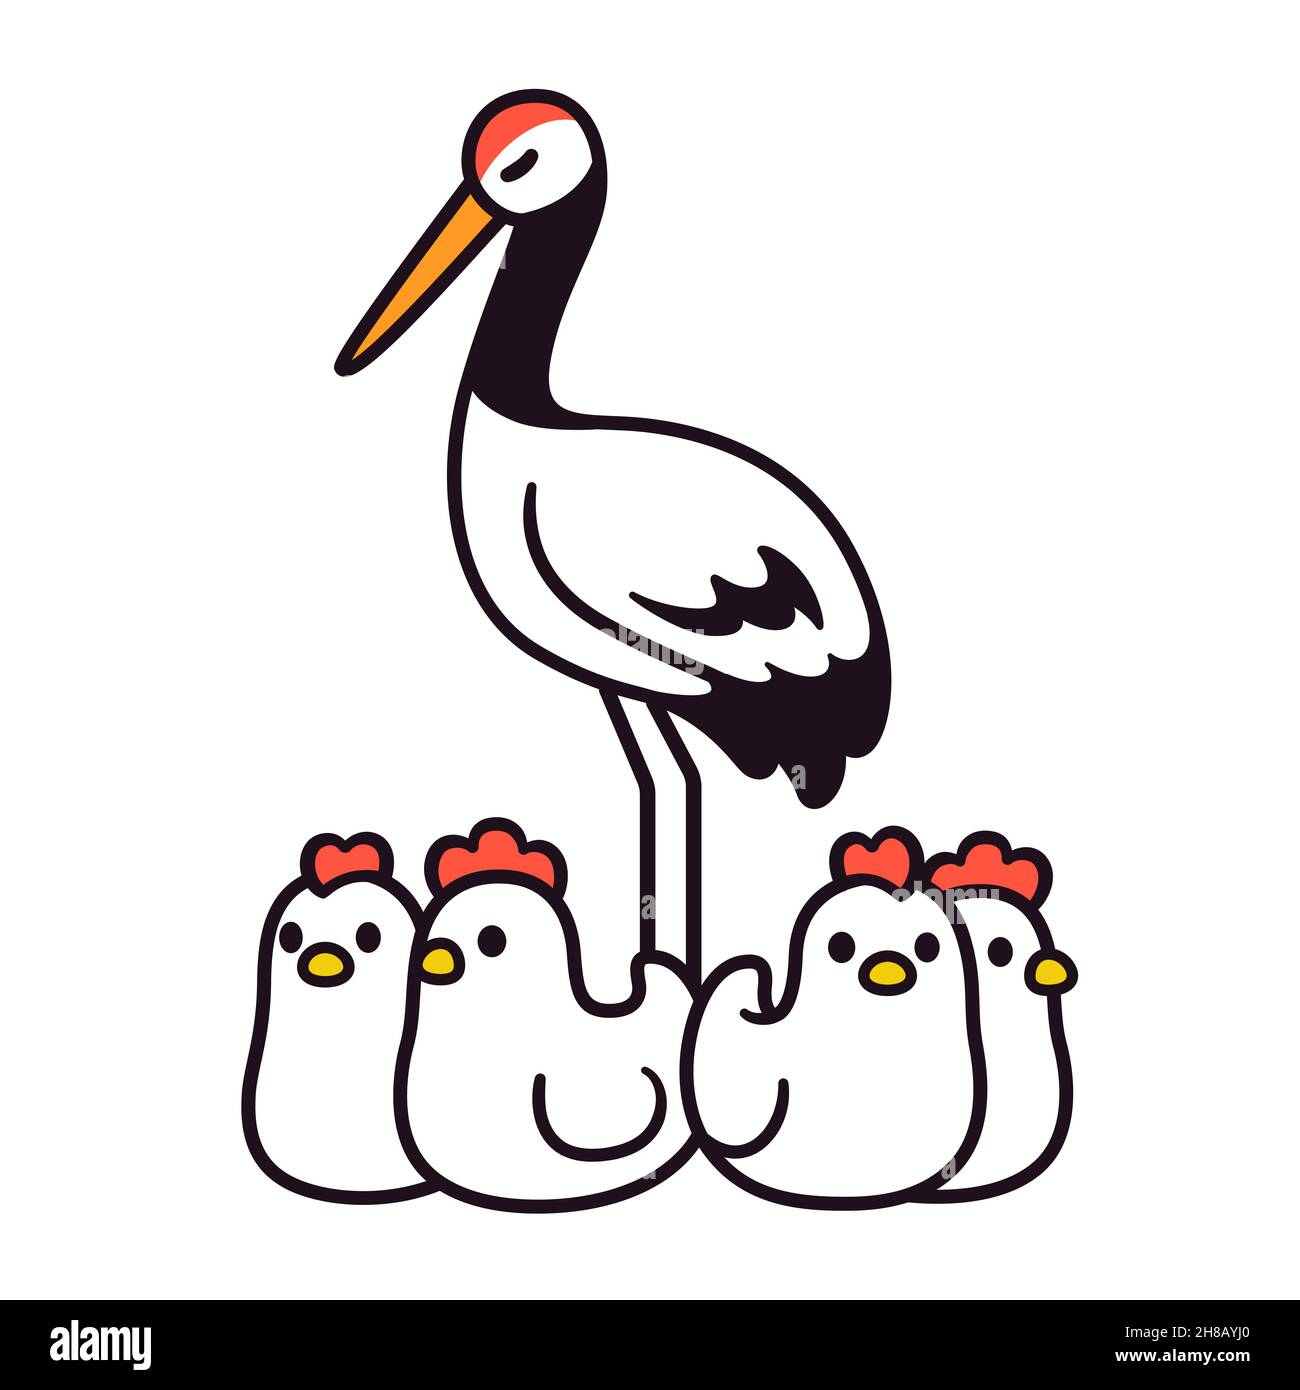 鹤立鸡群 Chinese expression: A crane standing among chickens. Simple cartoon drawing, vector illustration. Stock Vector